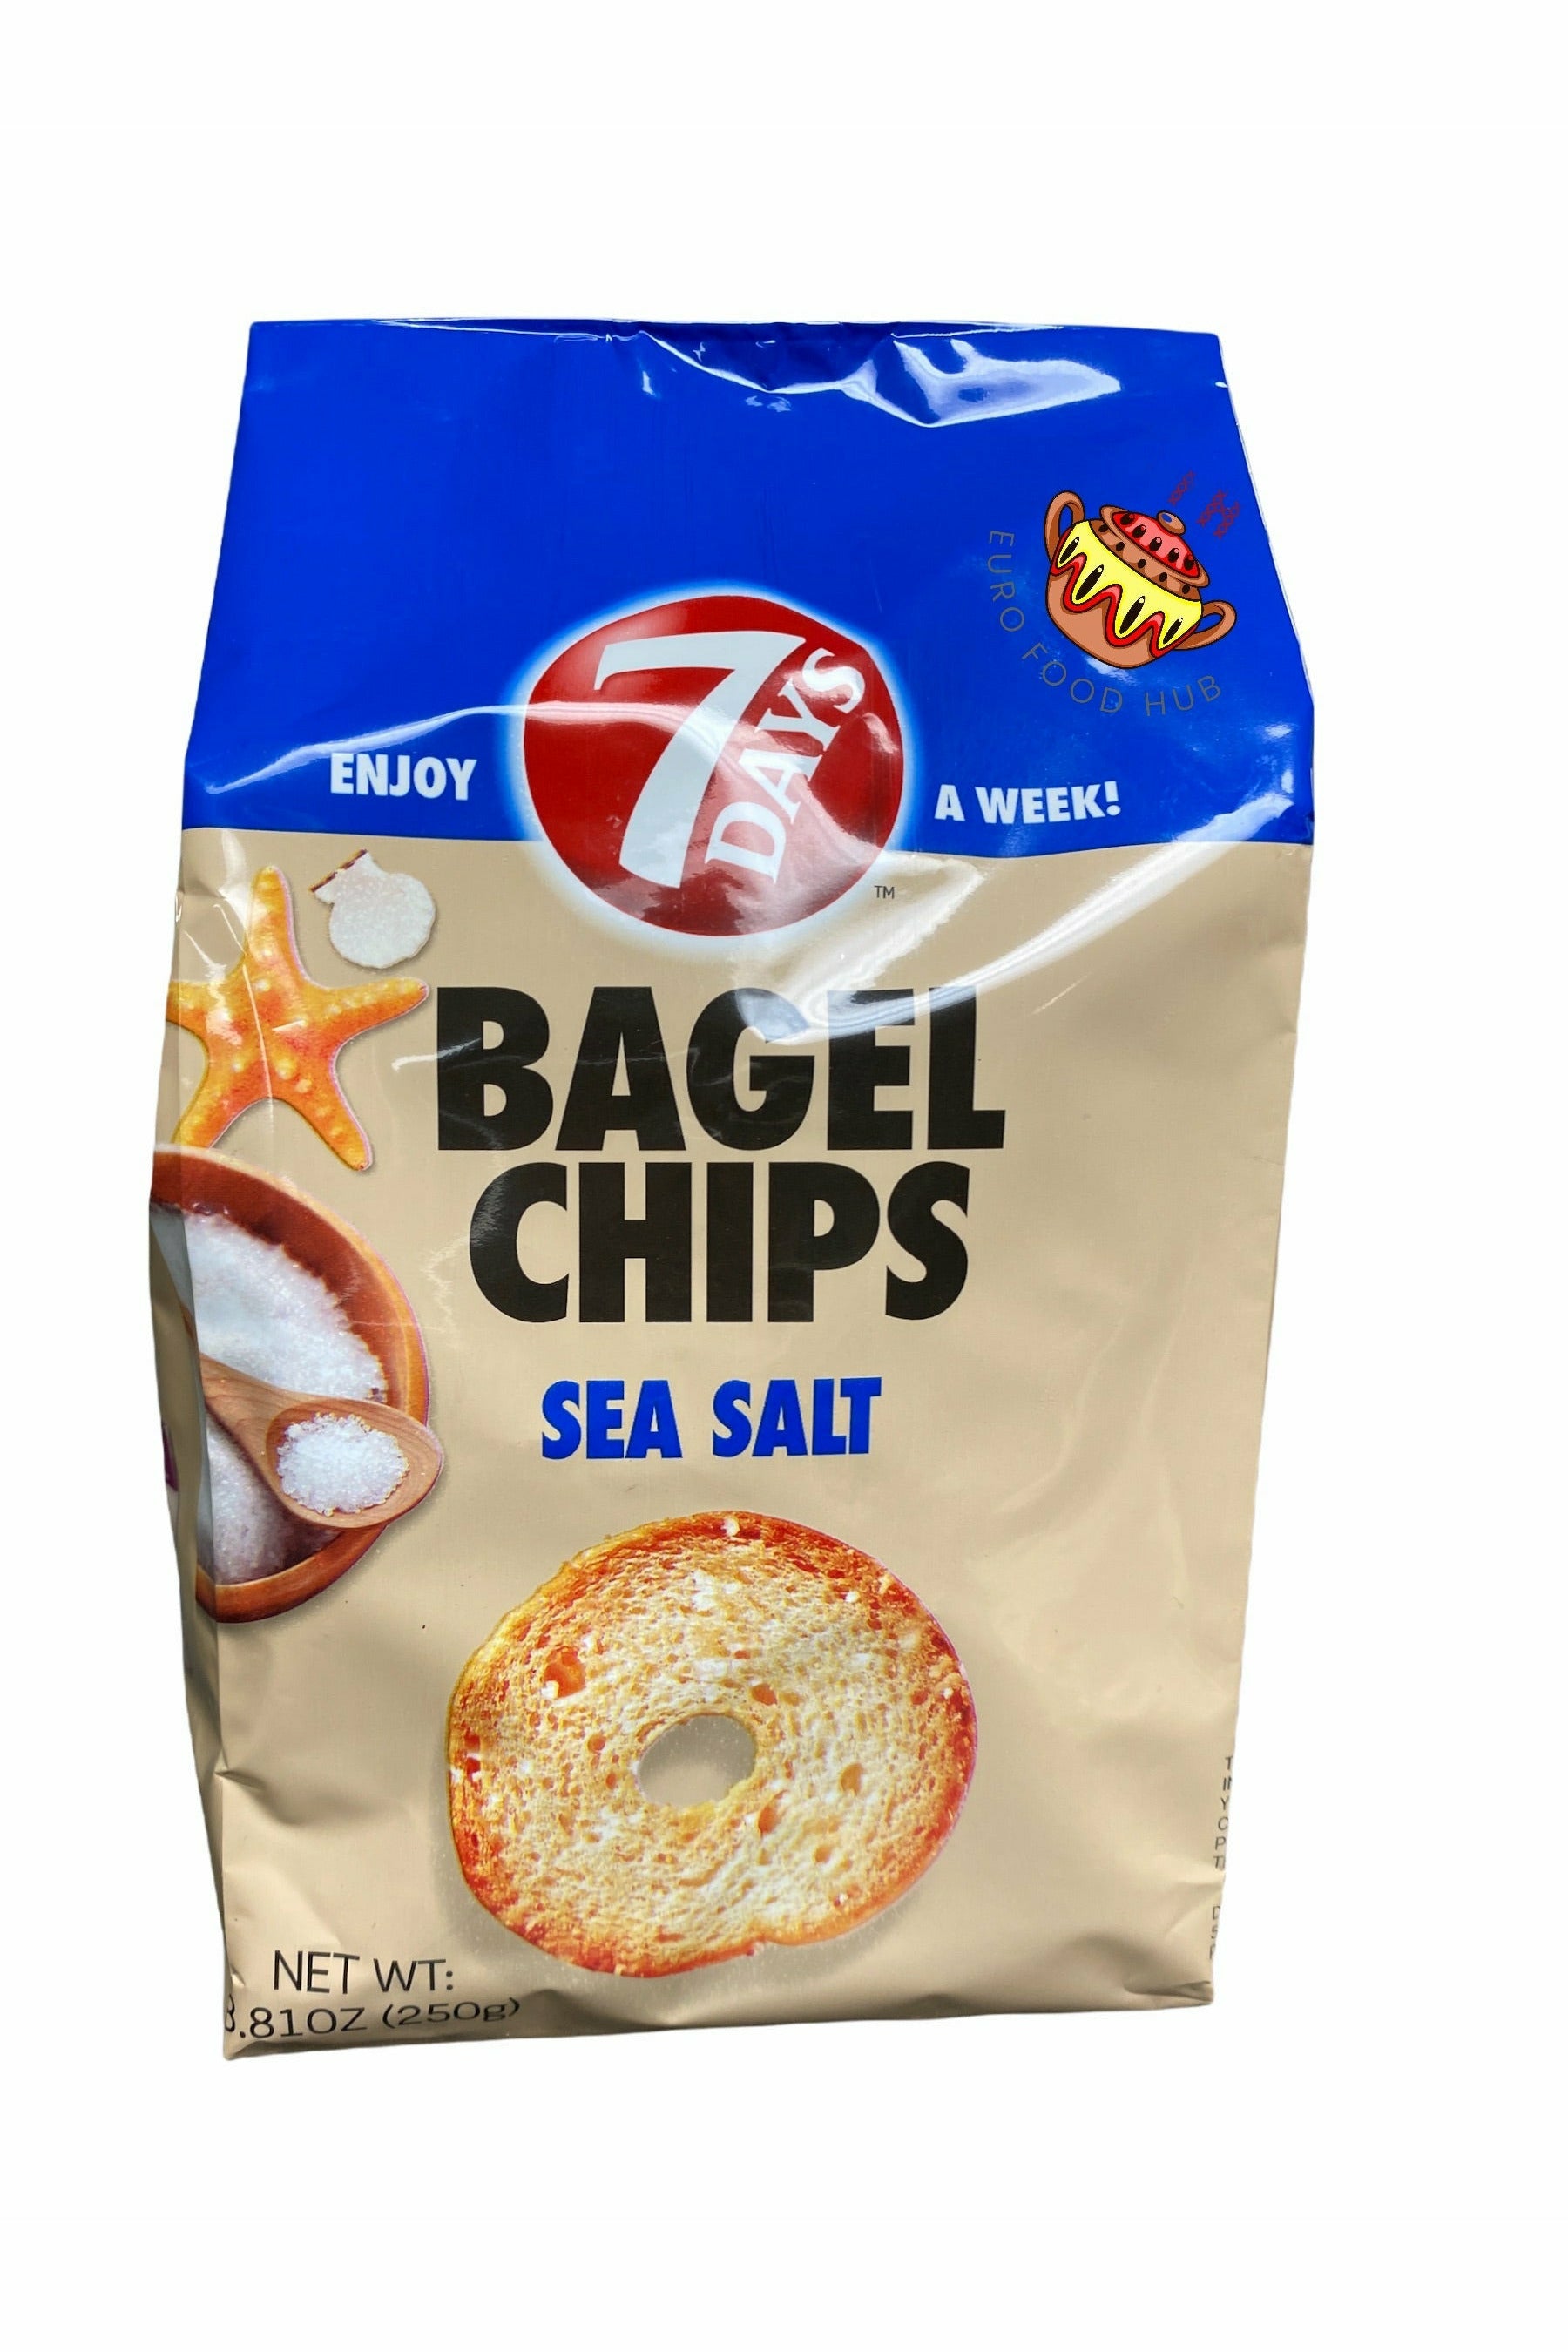 7 Days Bagel Chips/Bake Rolls - SEA SALT - Party Size